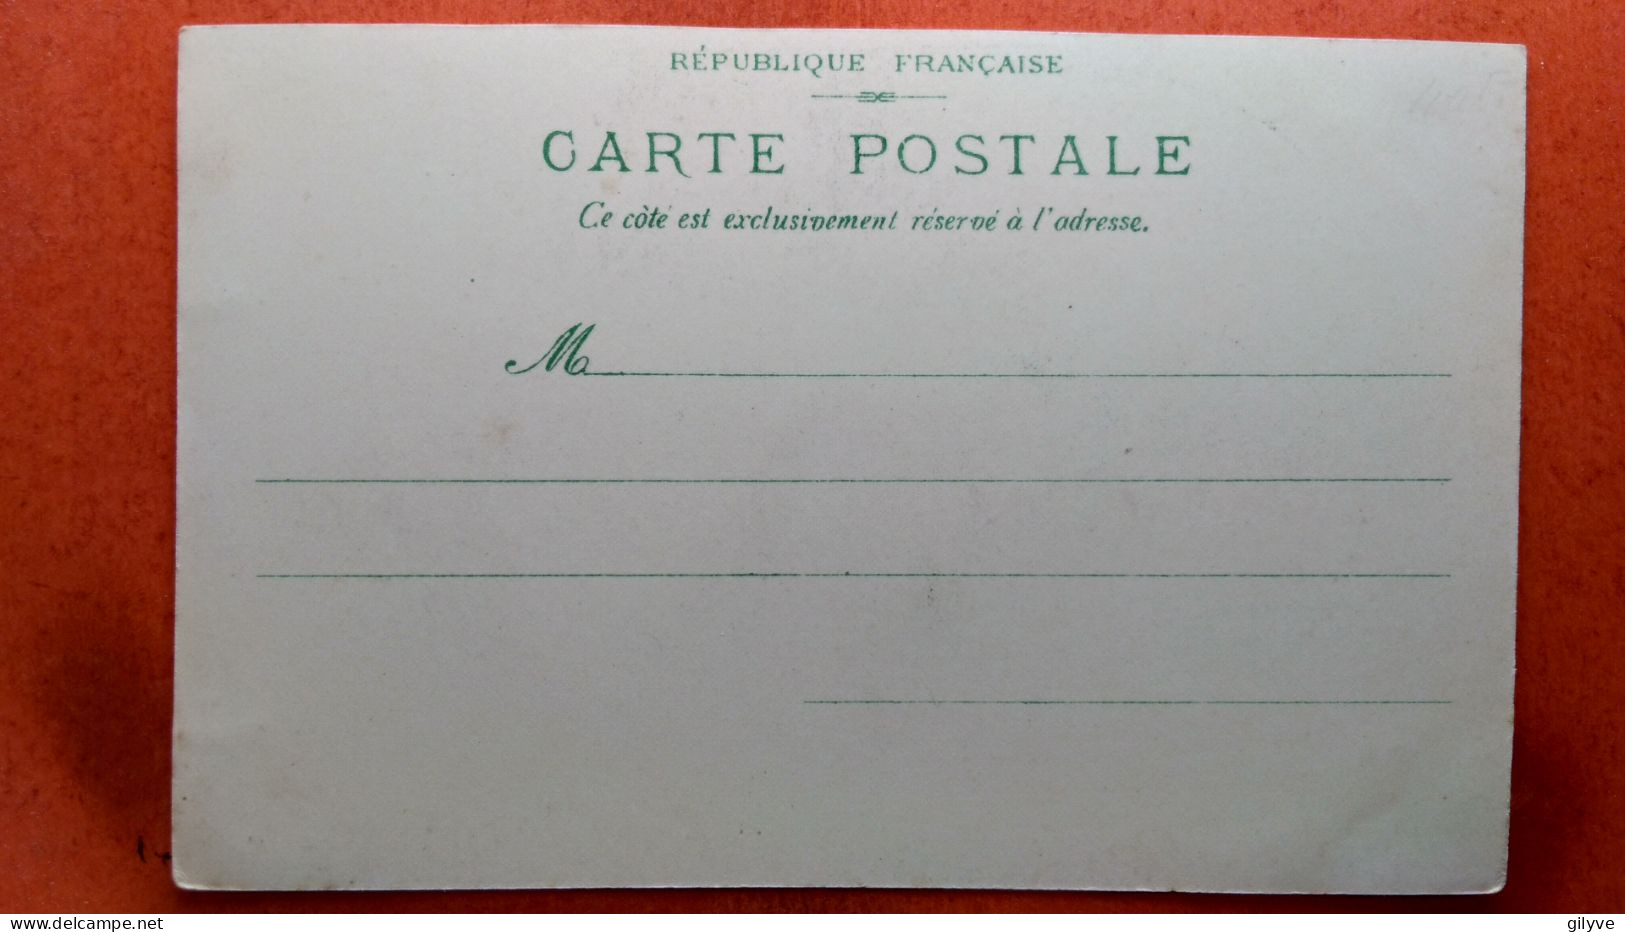 CPA (75) Exposition Universelle De Paris.1900  " La Ville De Paris"   (7A.478) - Exposiciones